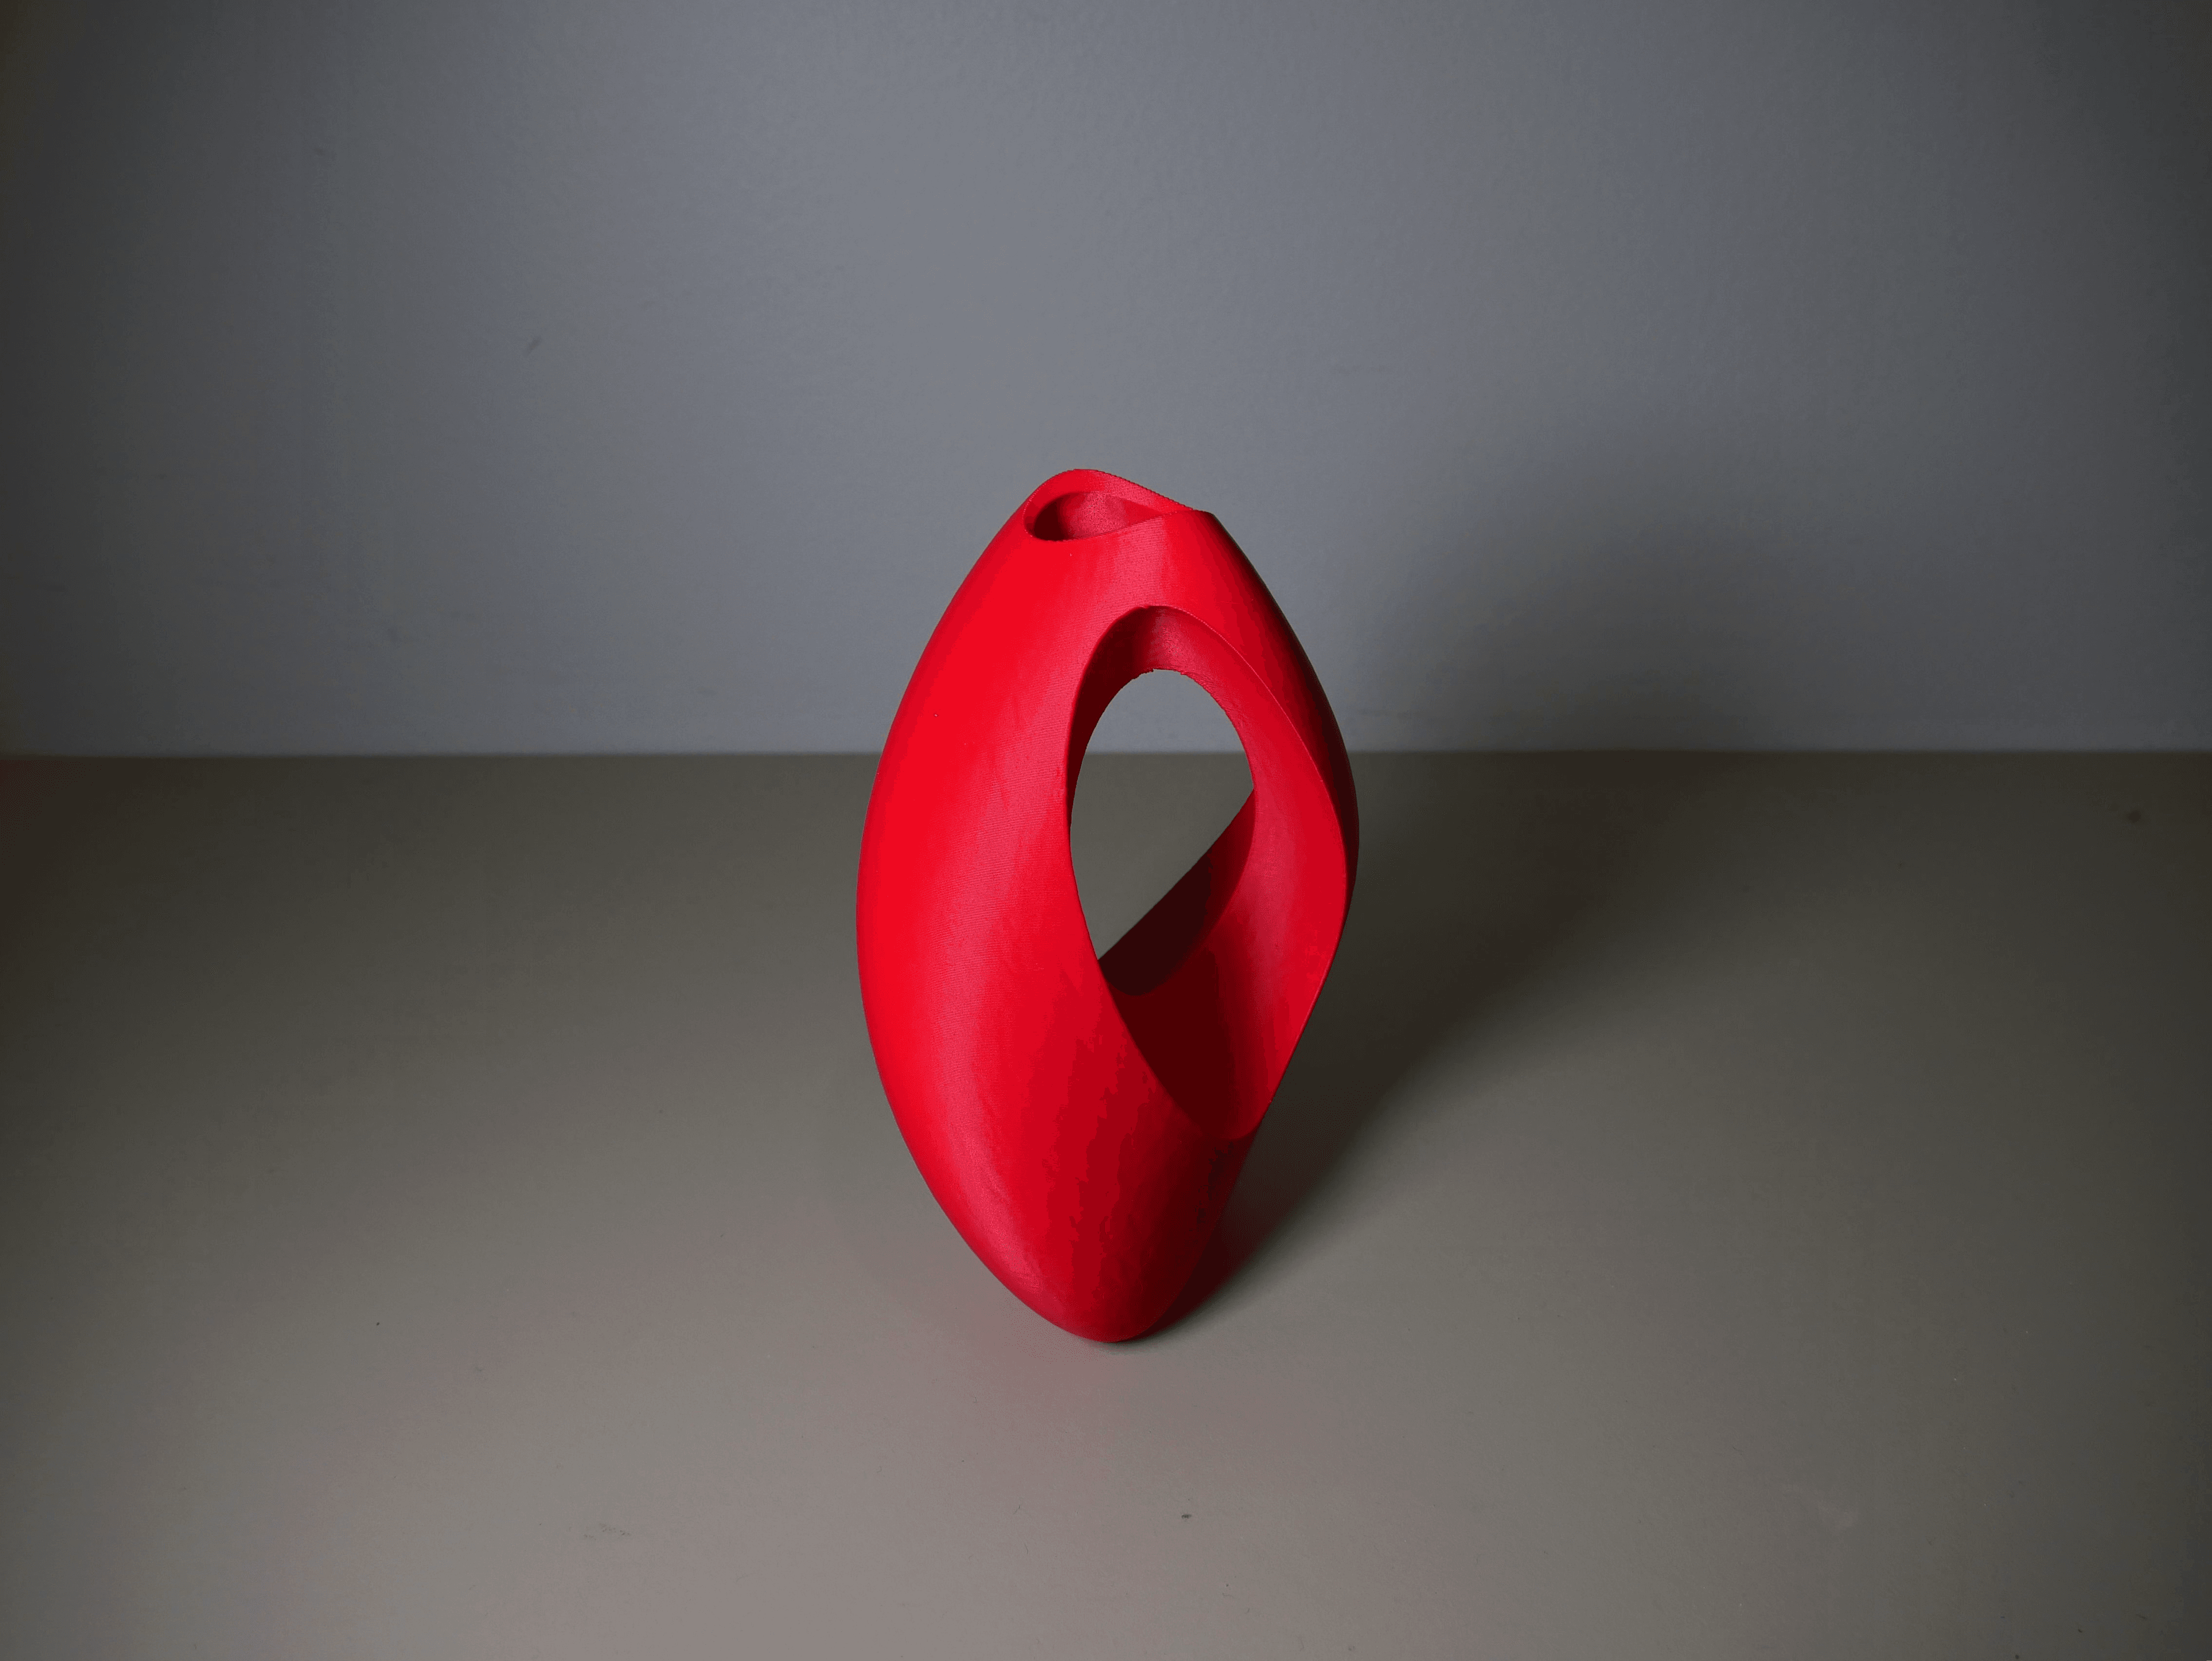 Asymmetric Teardrop Vase 3d model